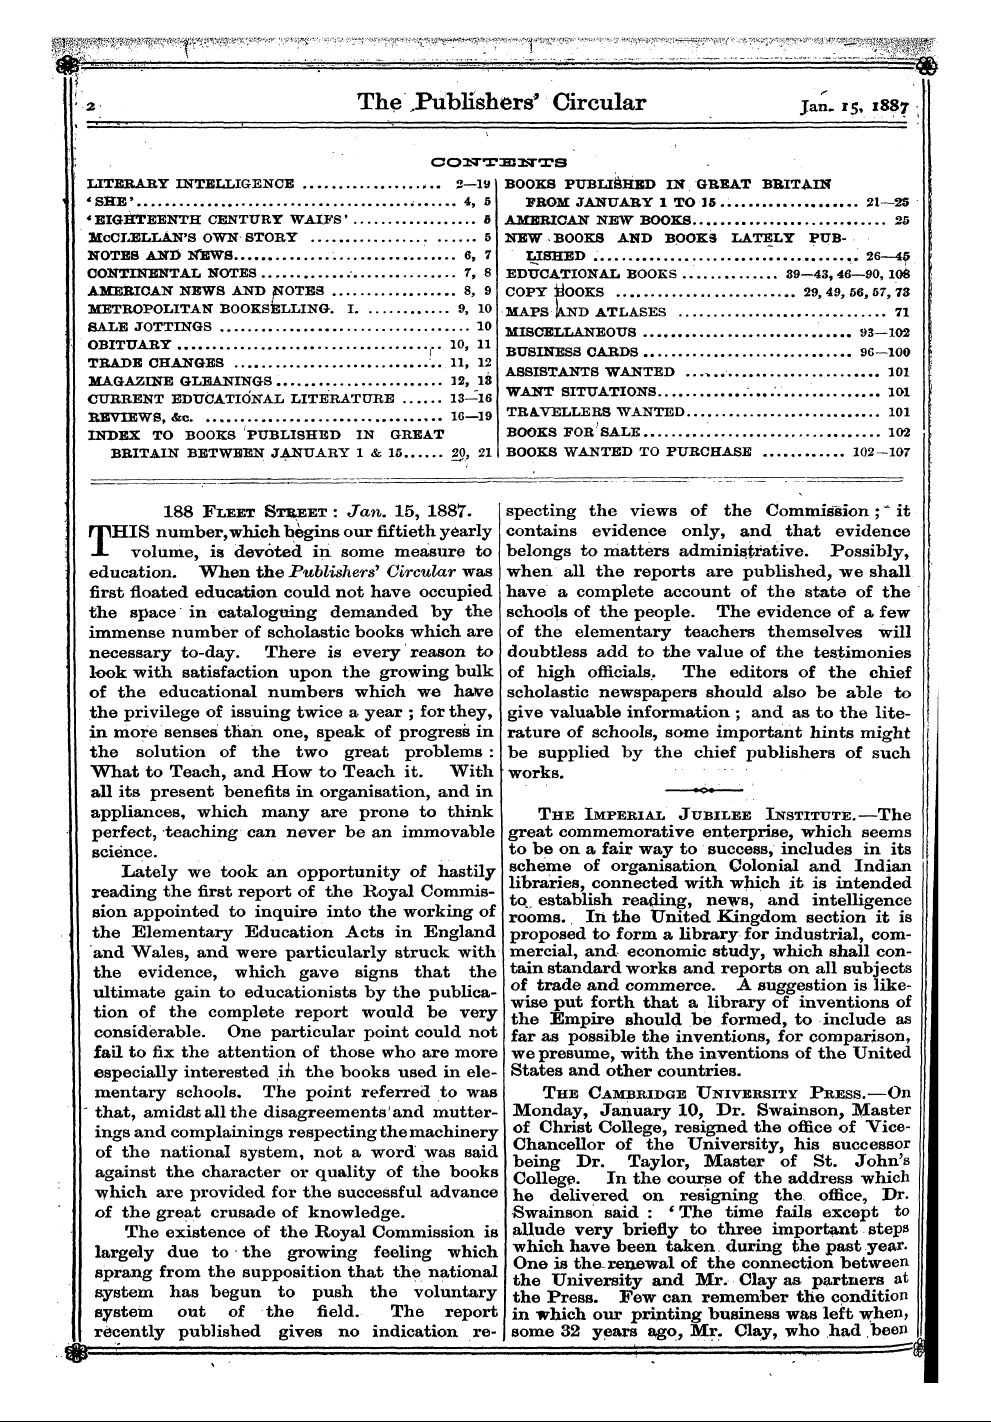 Publishers’ Circular (1880-1890): jS F Y, 1st edition - 188 Fiieet Street : Jan. 15, 1887.